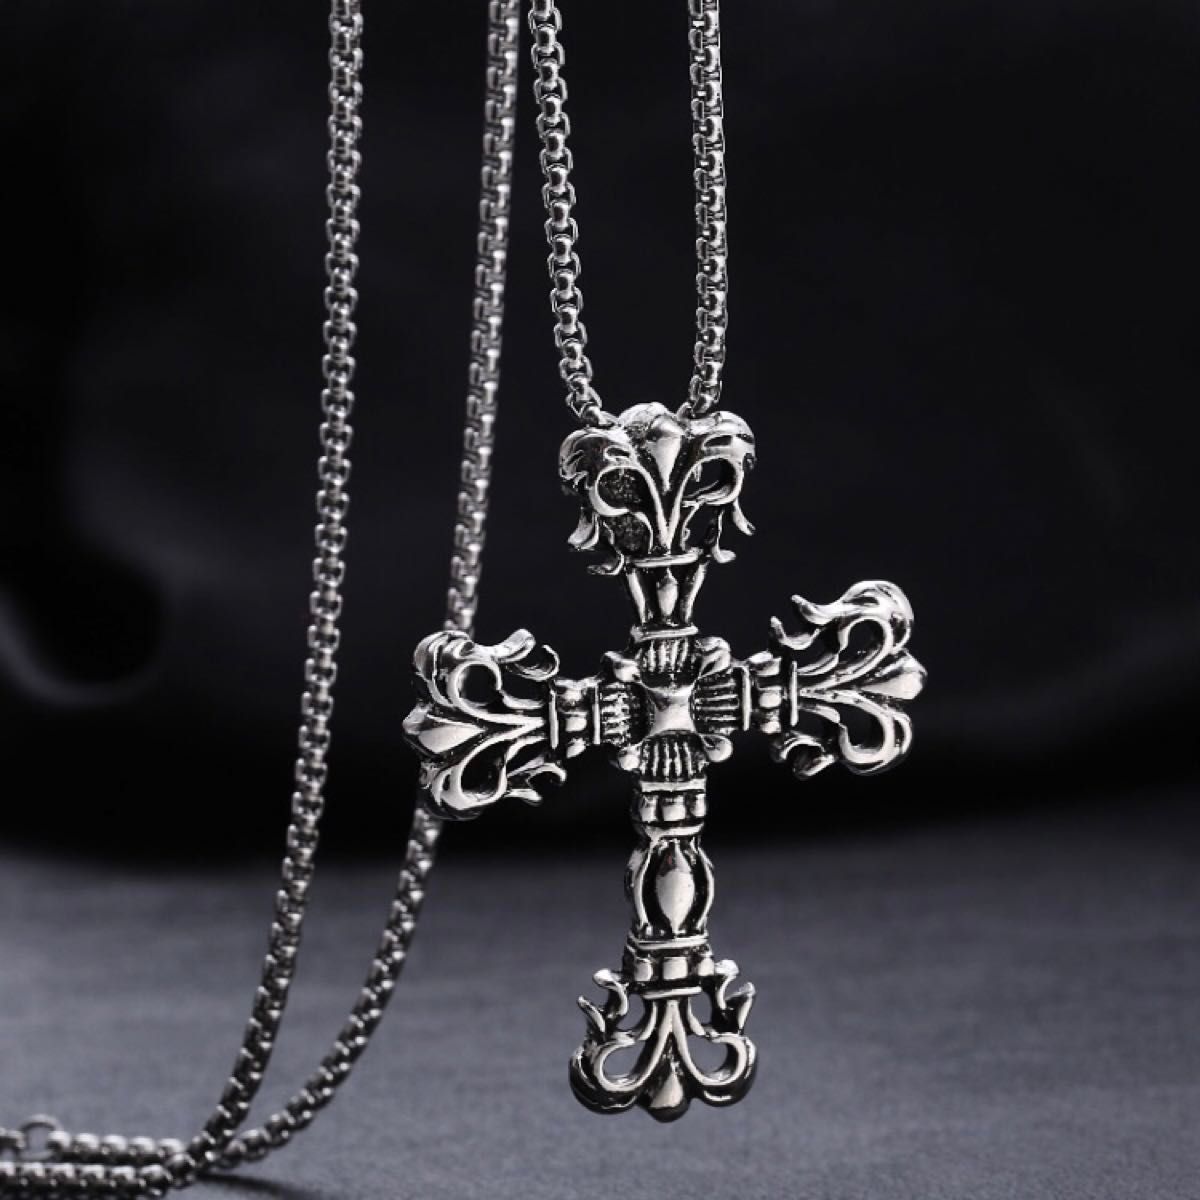 クロス ネックレス 十字 十字架 レディース メンズ シルバー ペンダント おしゃれ クロスネックレス ヴィンテージ 装飾 銀色